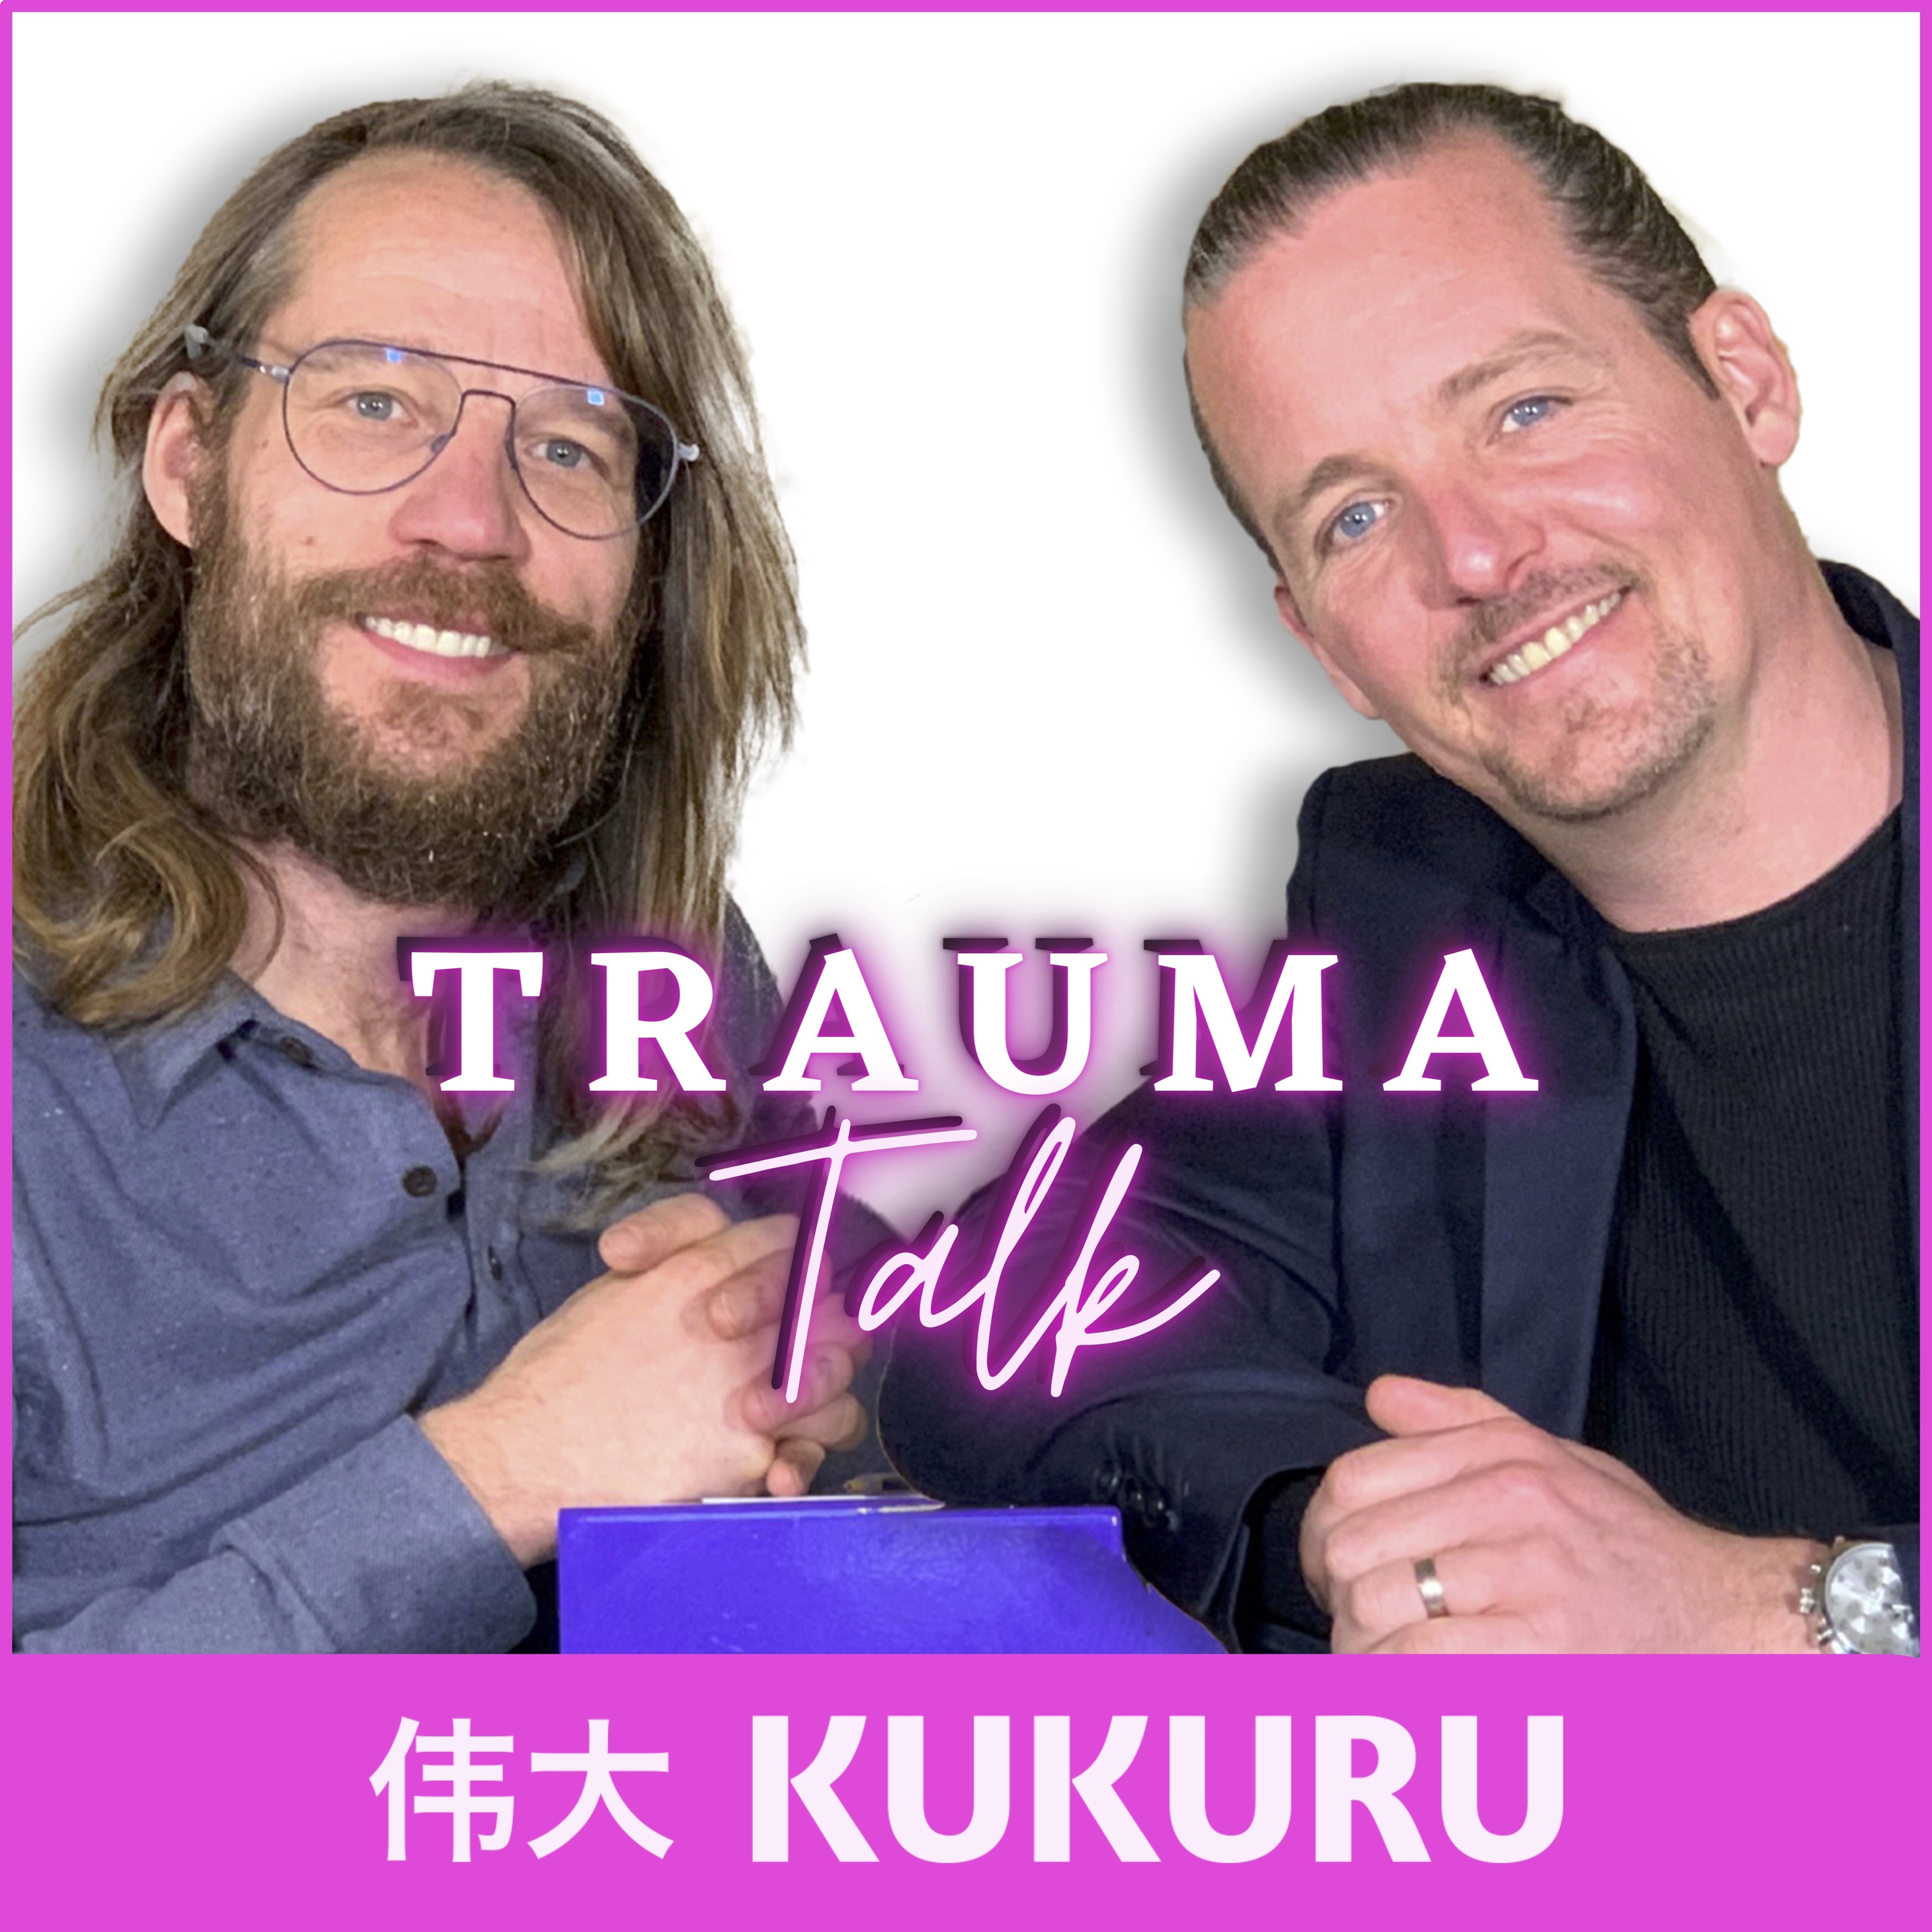 Wat is een trauma? - Trauma Talk #1